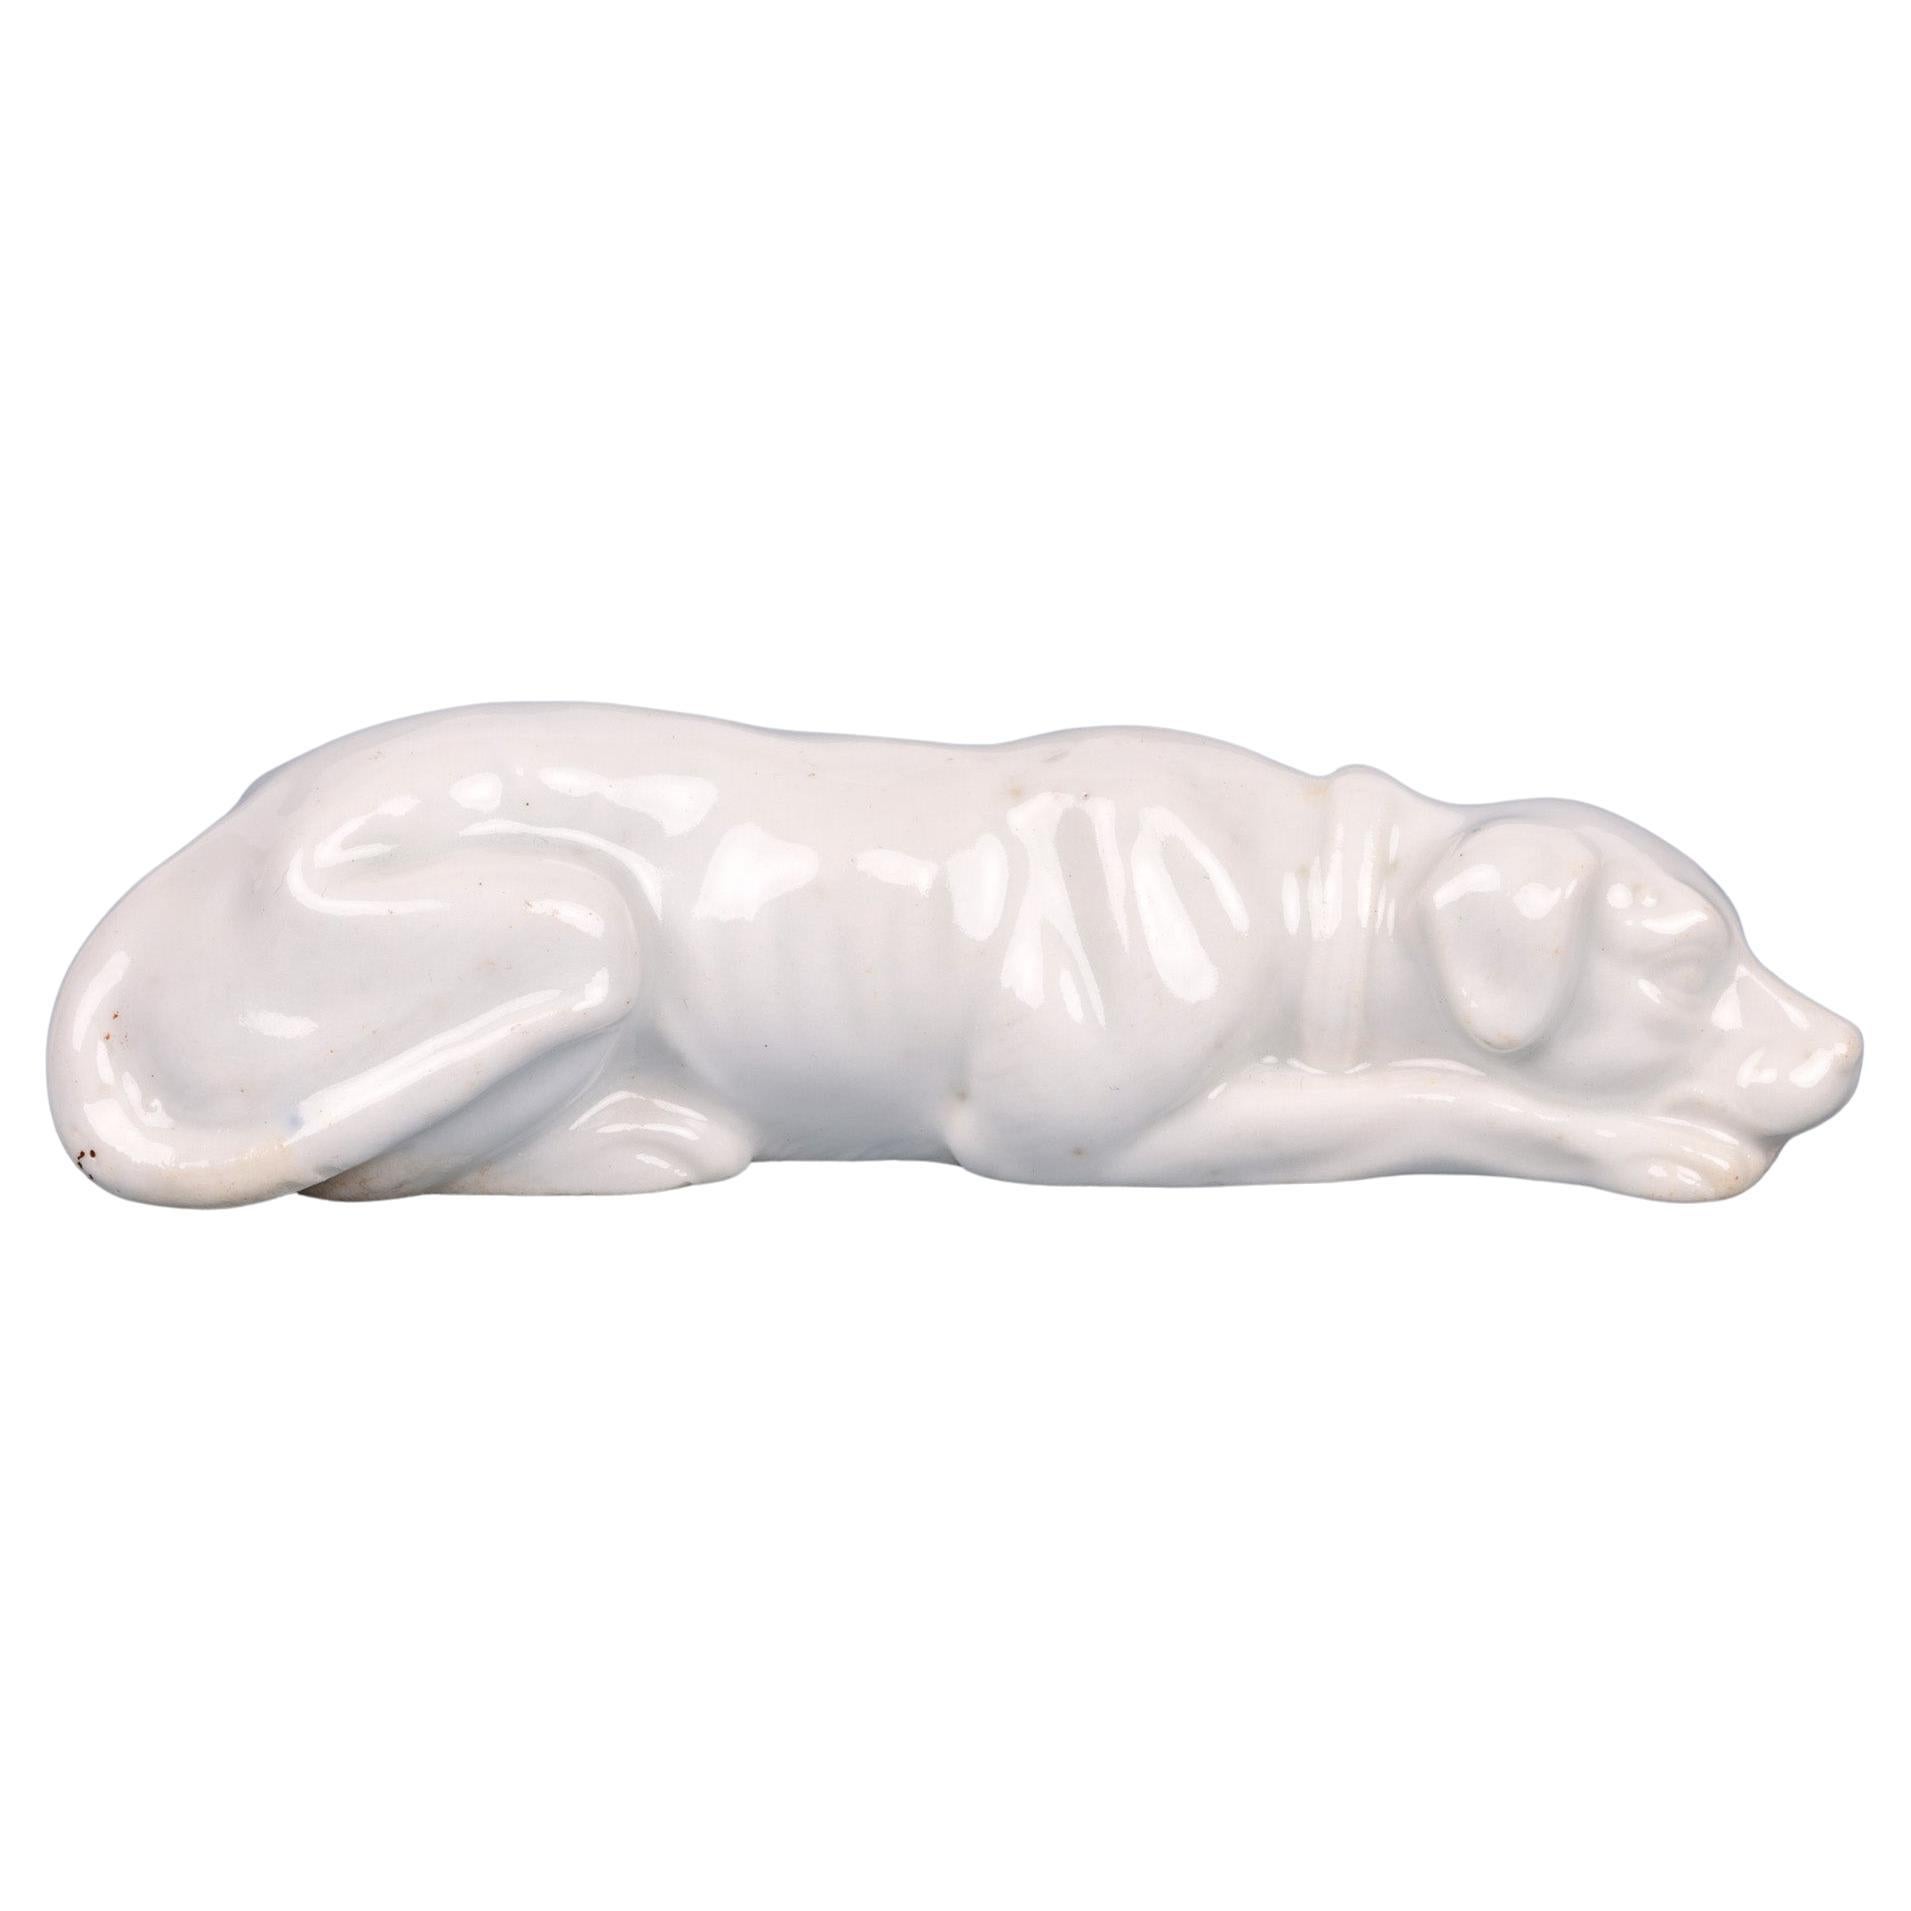 Antique figurine de chien couché en porcelaine émaillée blanche